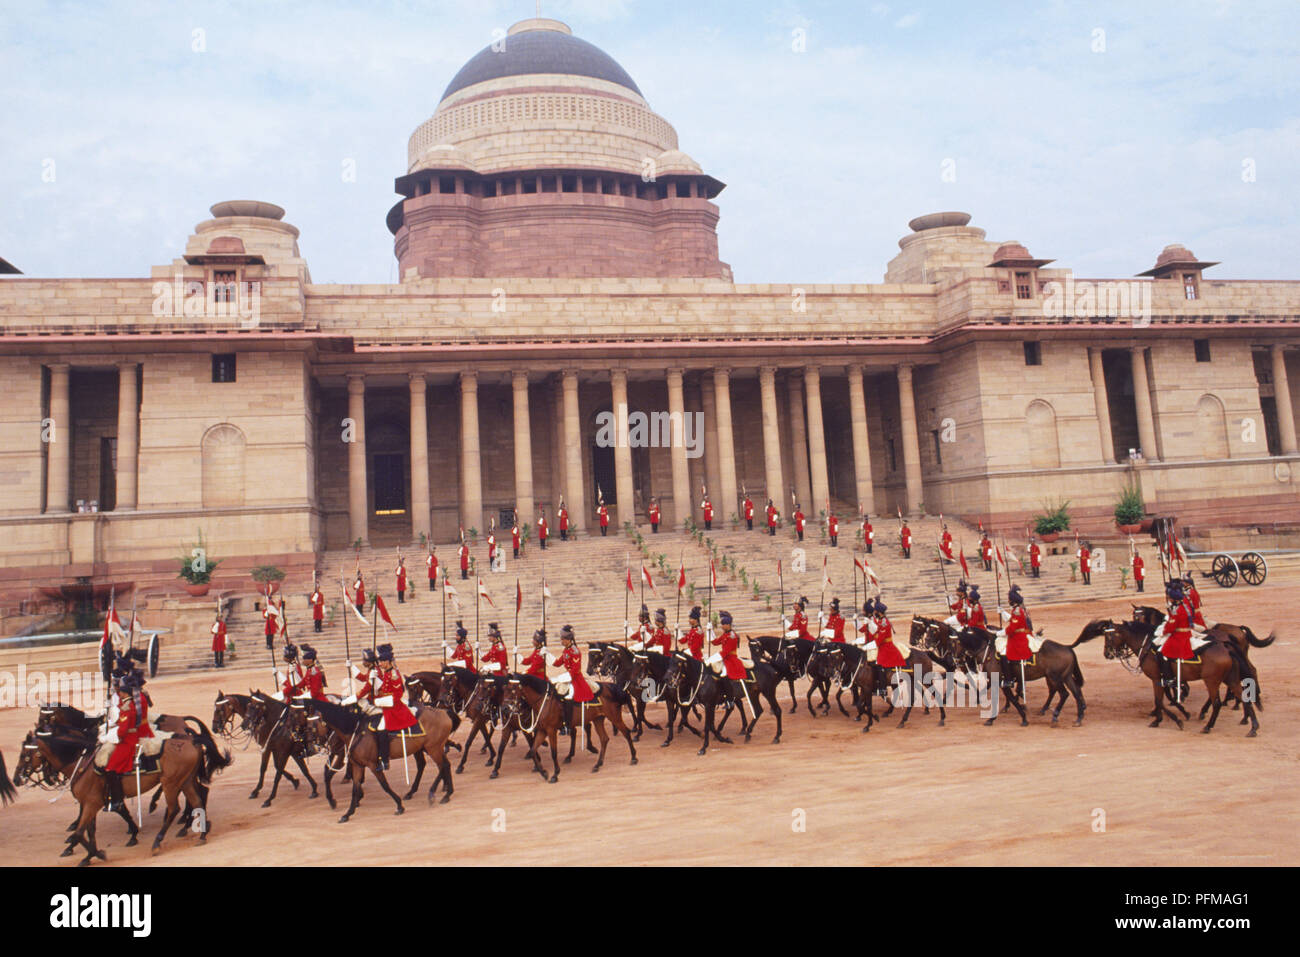 Indien, Delhi, staatliche Prunk mit rot uniformierte Männer zu Pferd, auf dem Vorplatz der Rashtrapati Bhavan, die offizielle Residenz des Präsidenten von Indien, genannt Viceroy's House in der Kolonialzeit, auf dem Kamm des Raisina Hill gelegen. Stockfoto